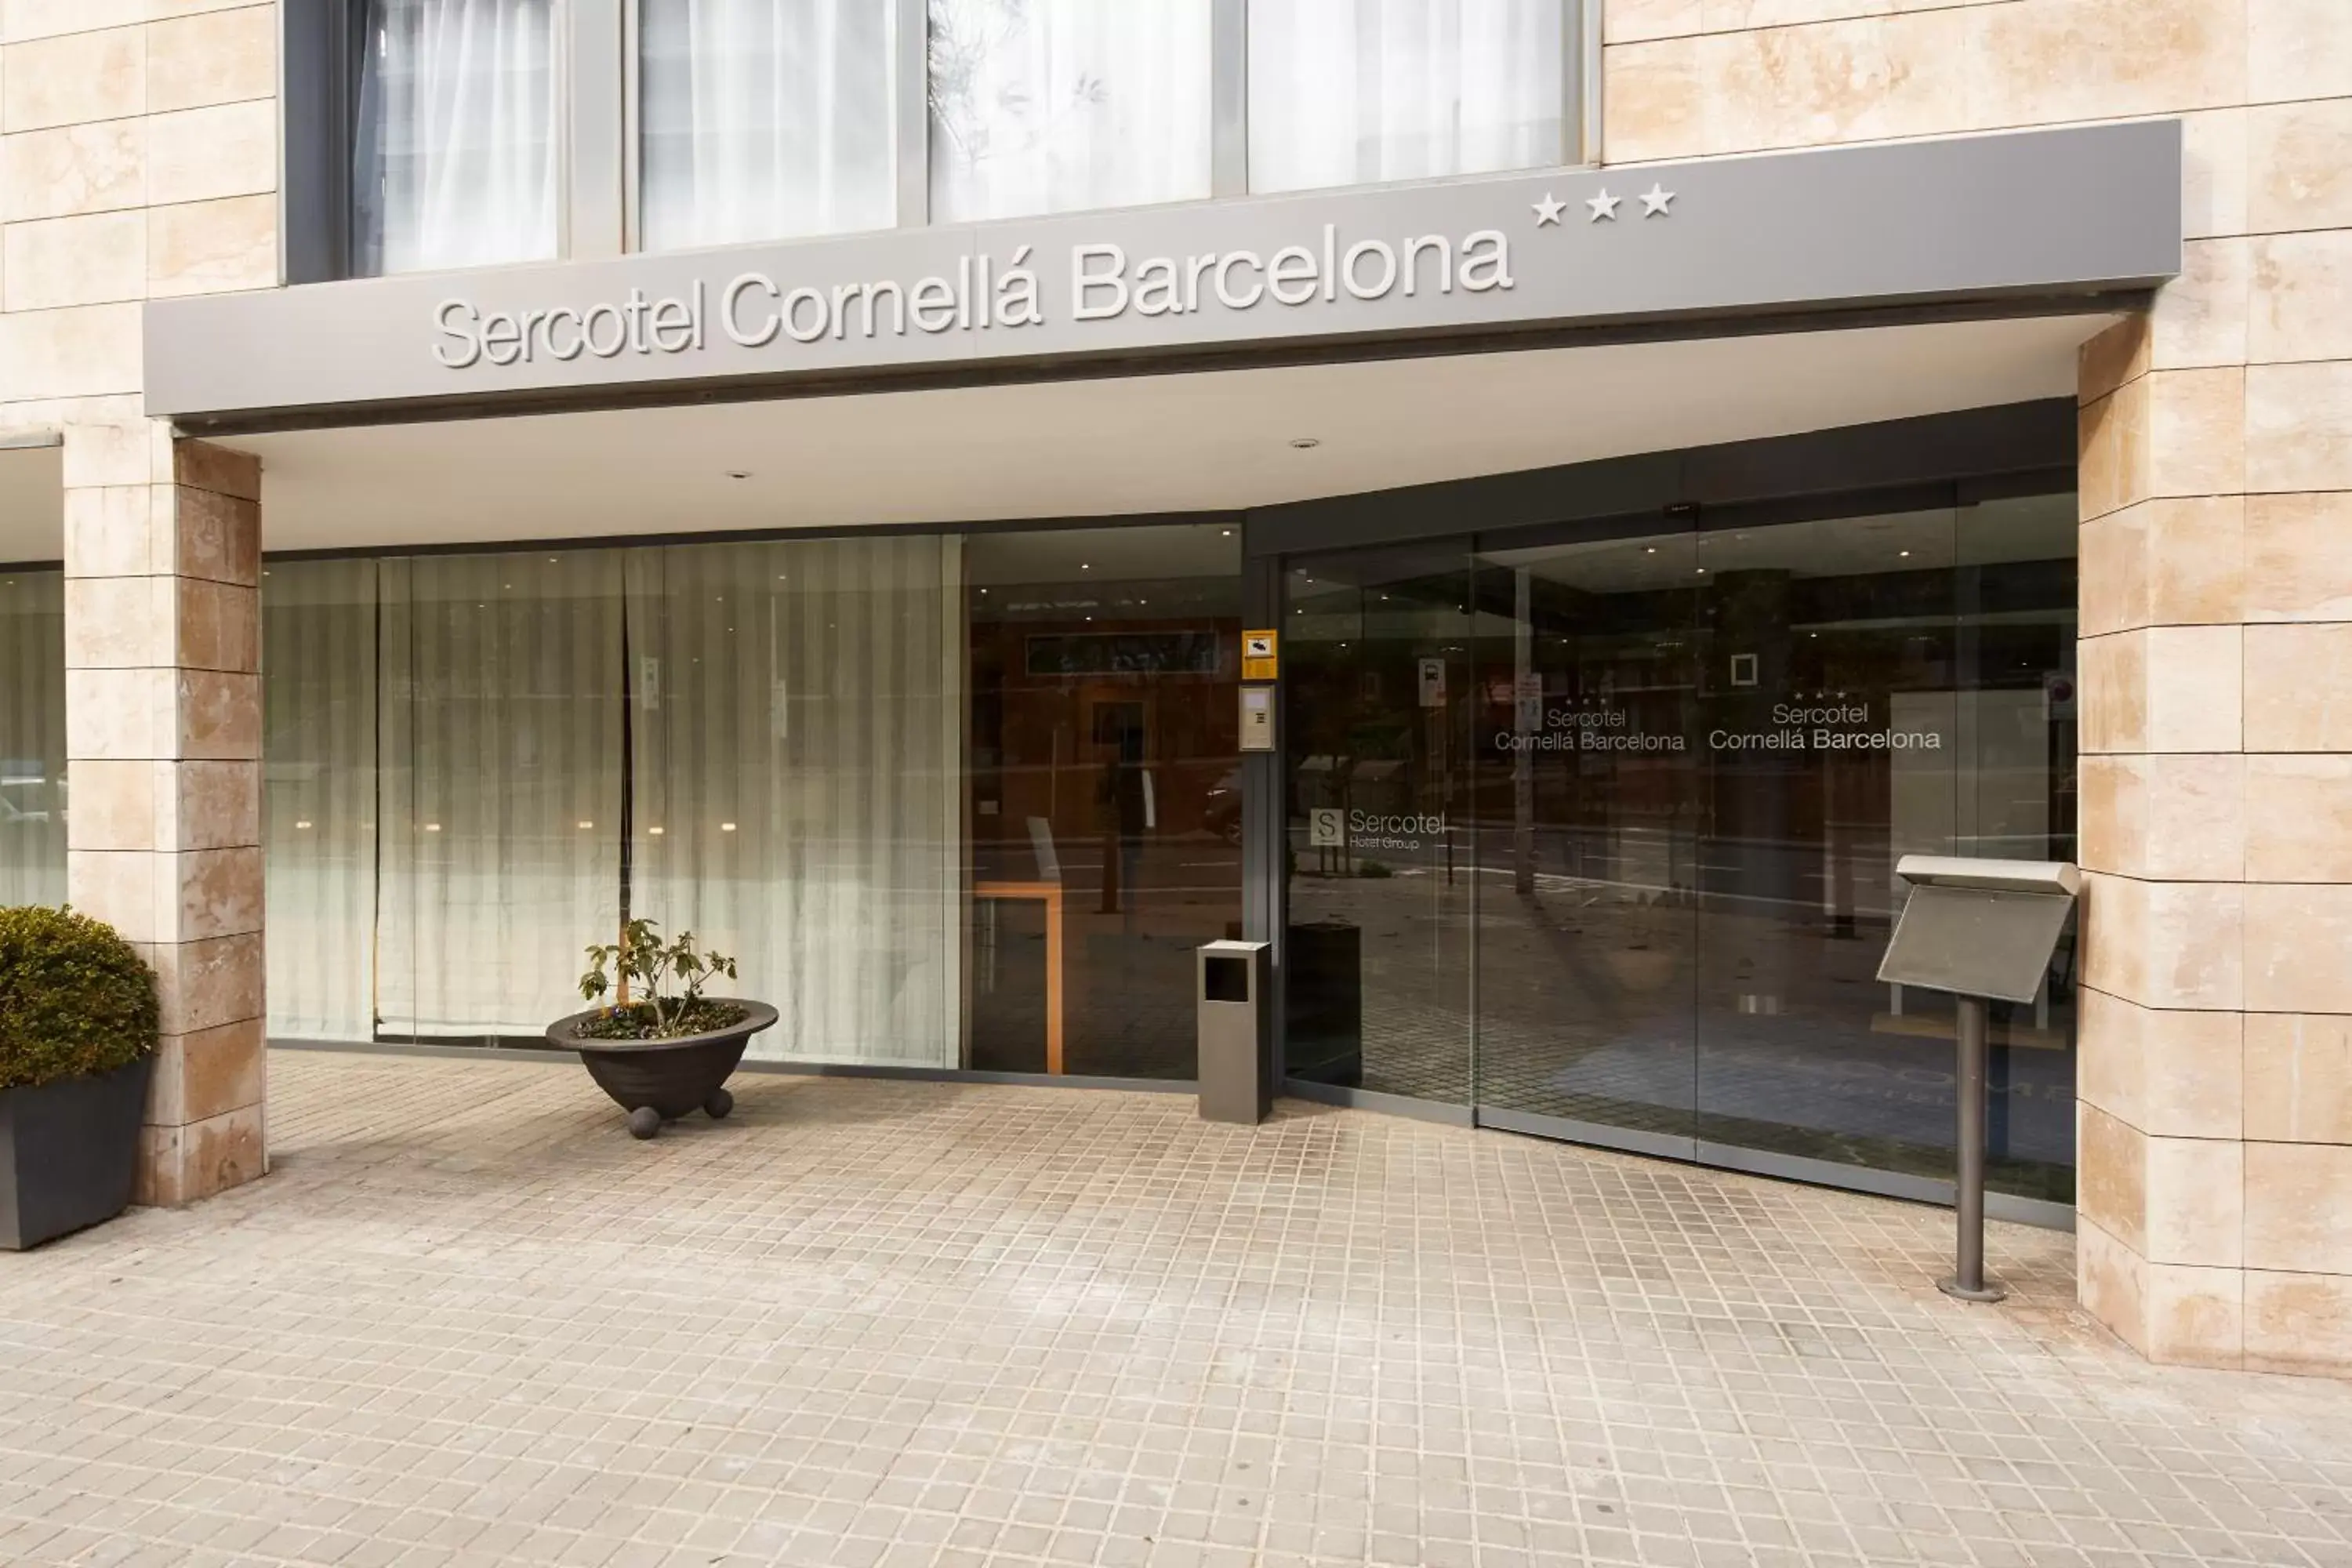 Property building in Sercotel Cornellà Barcelona